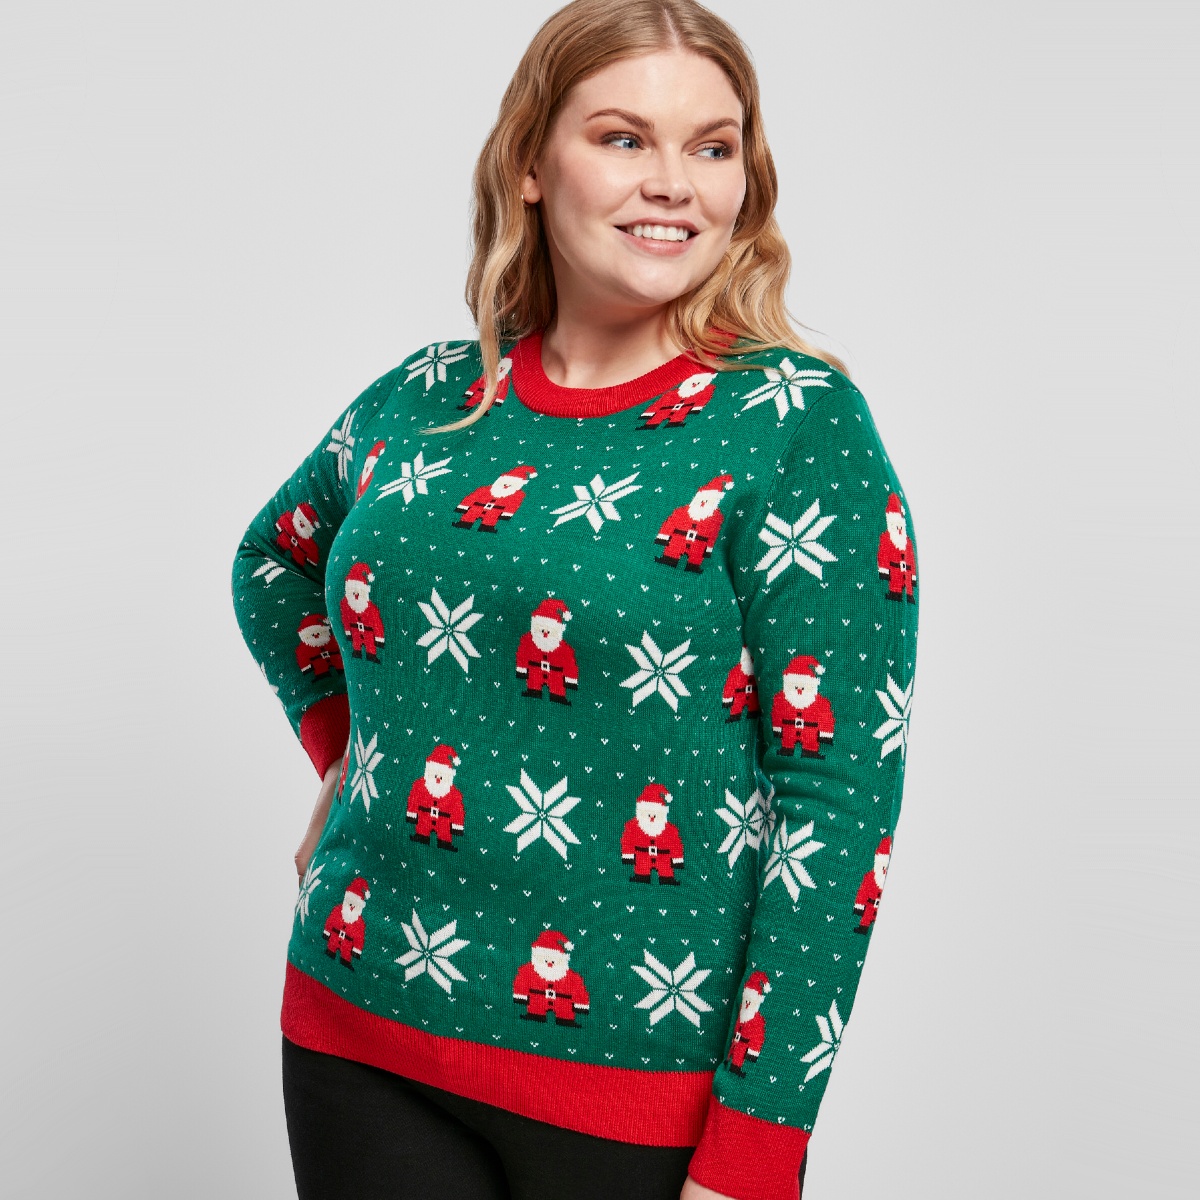 Toezicht houden Consumeren Achterhouden Foute Kersttrui Dames Groen Kerstmannen - Foute Kerstsweaters